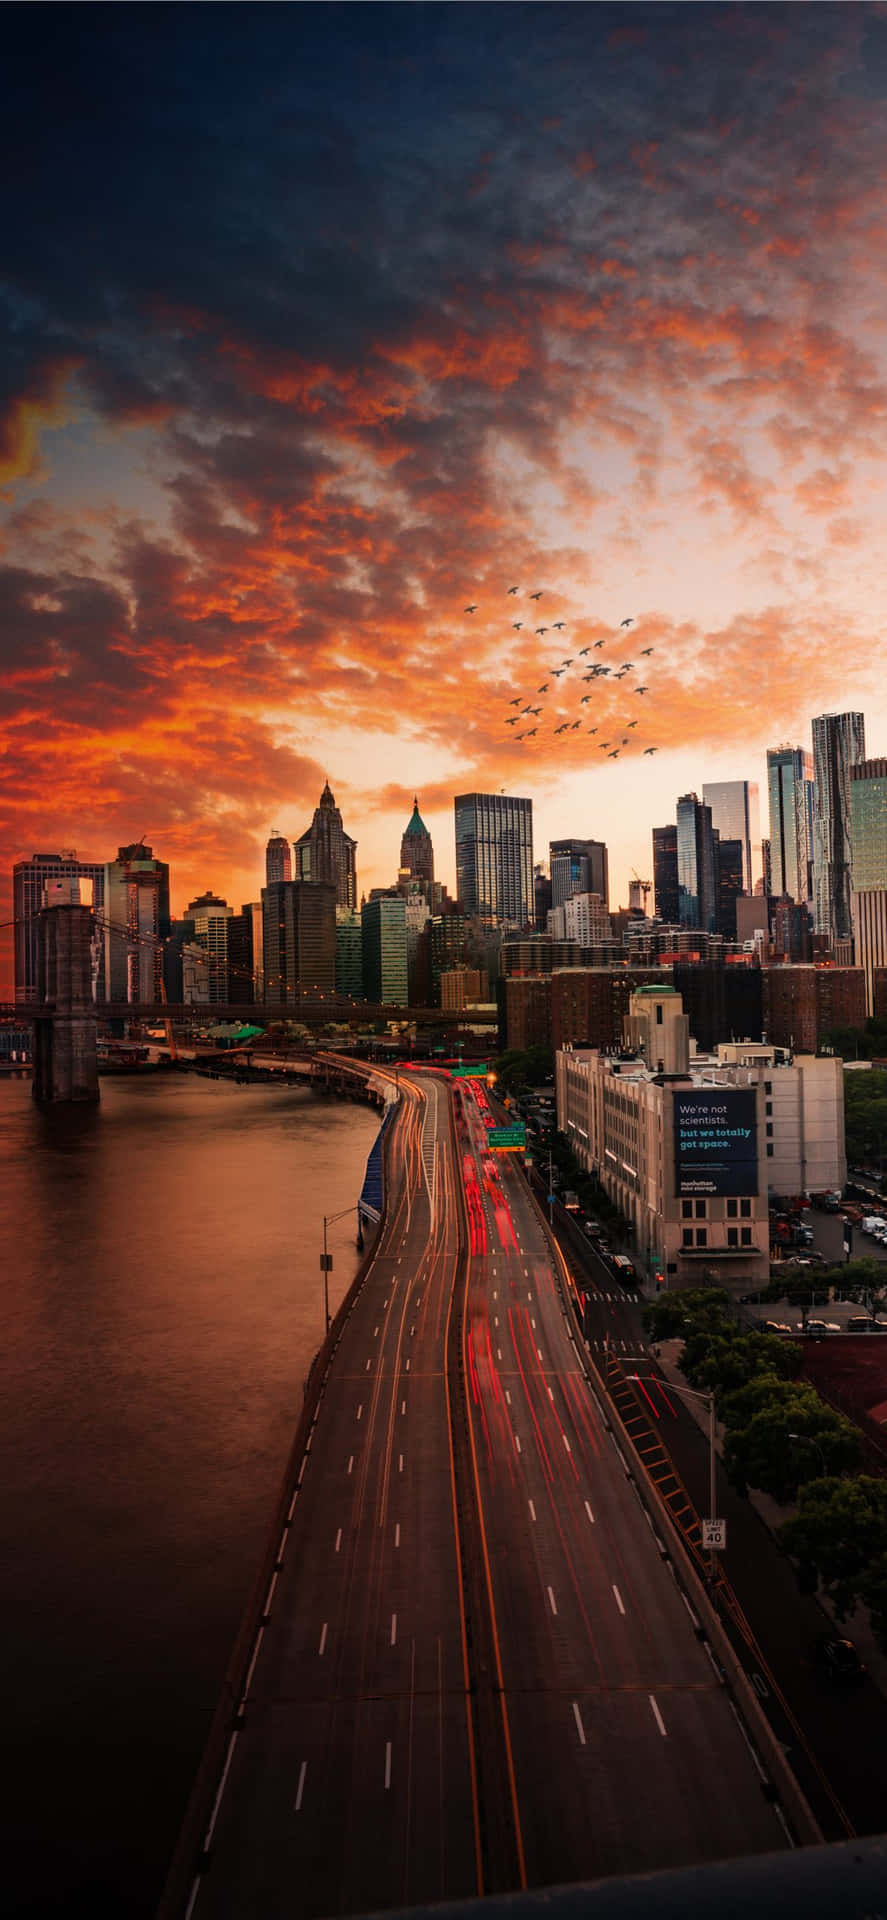 Iphonex Bakgrundsbild Med Orangea Moln Över Manhattan Bridge I New York City.